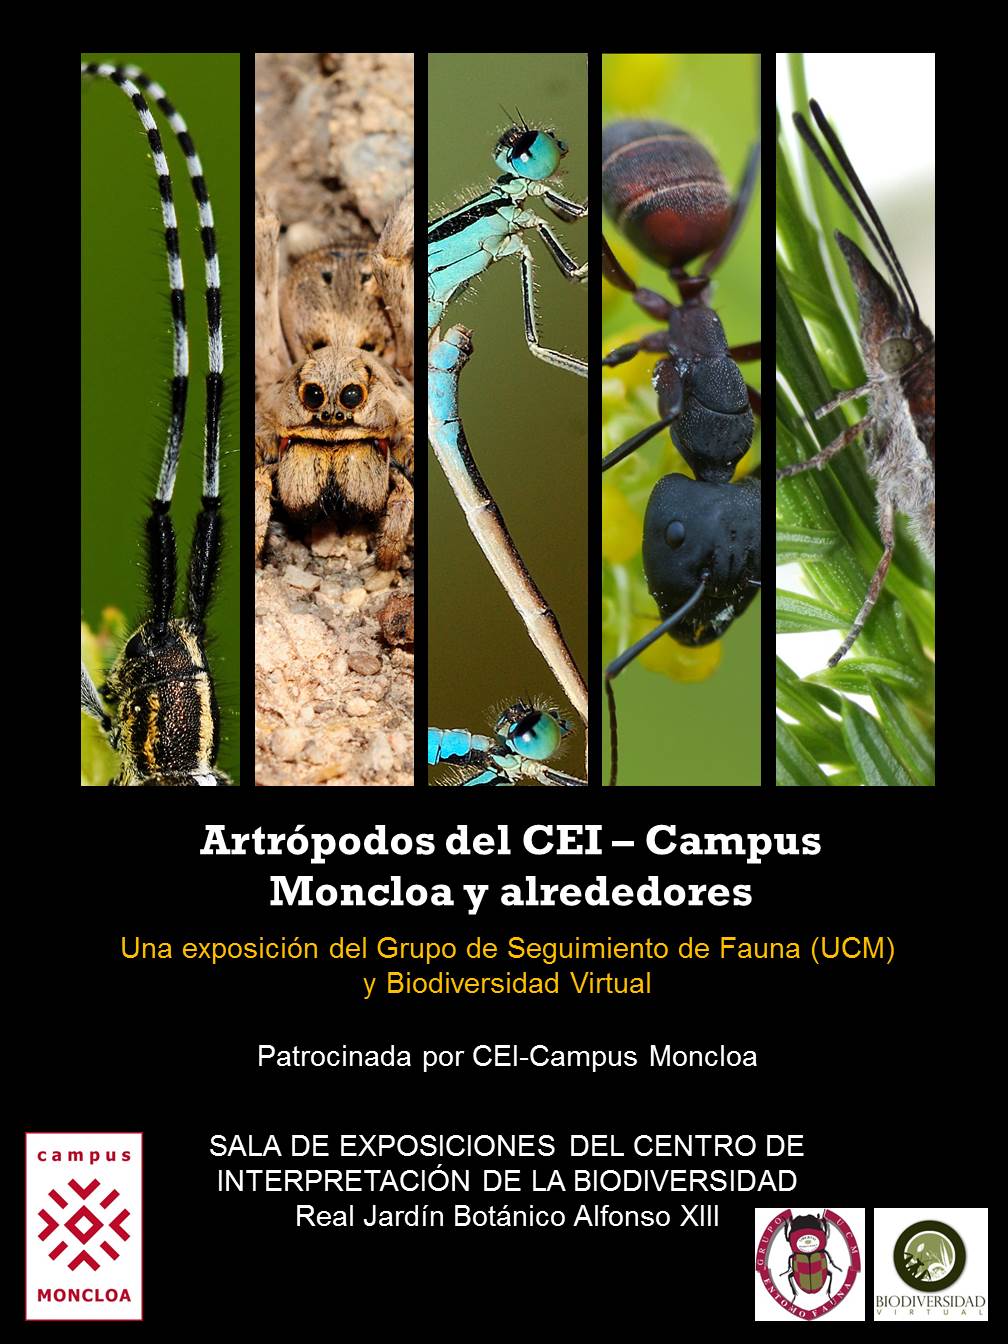 Los Artrópodos del CEI-Campus Moncloa y alrededores